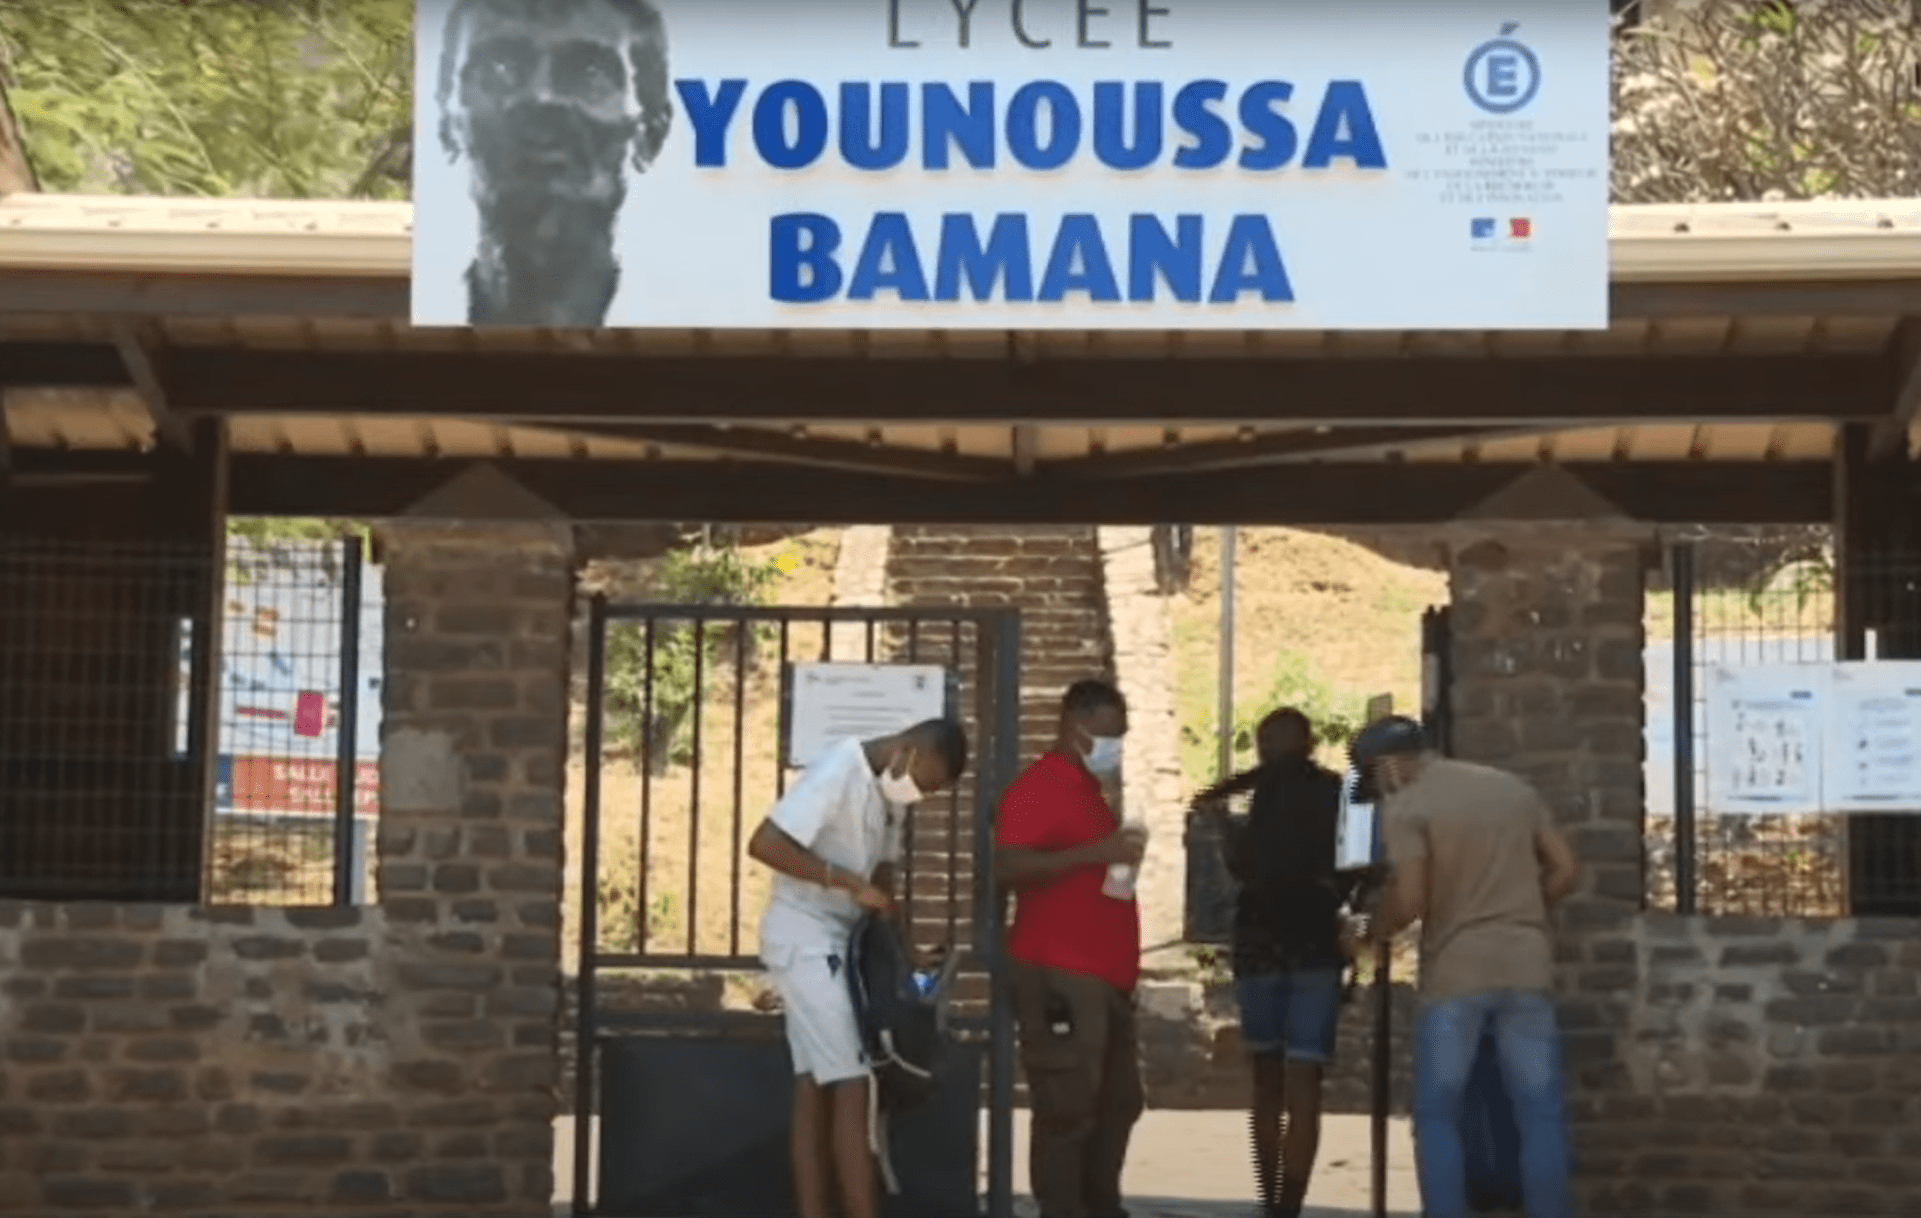 Coupures d'eau à Mayotte : Évacuation et Interruption des Cours au Lycée Younoussa Bamana. Plusieurs établissements scolaires fermés eau non potable agressions Mayotte